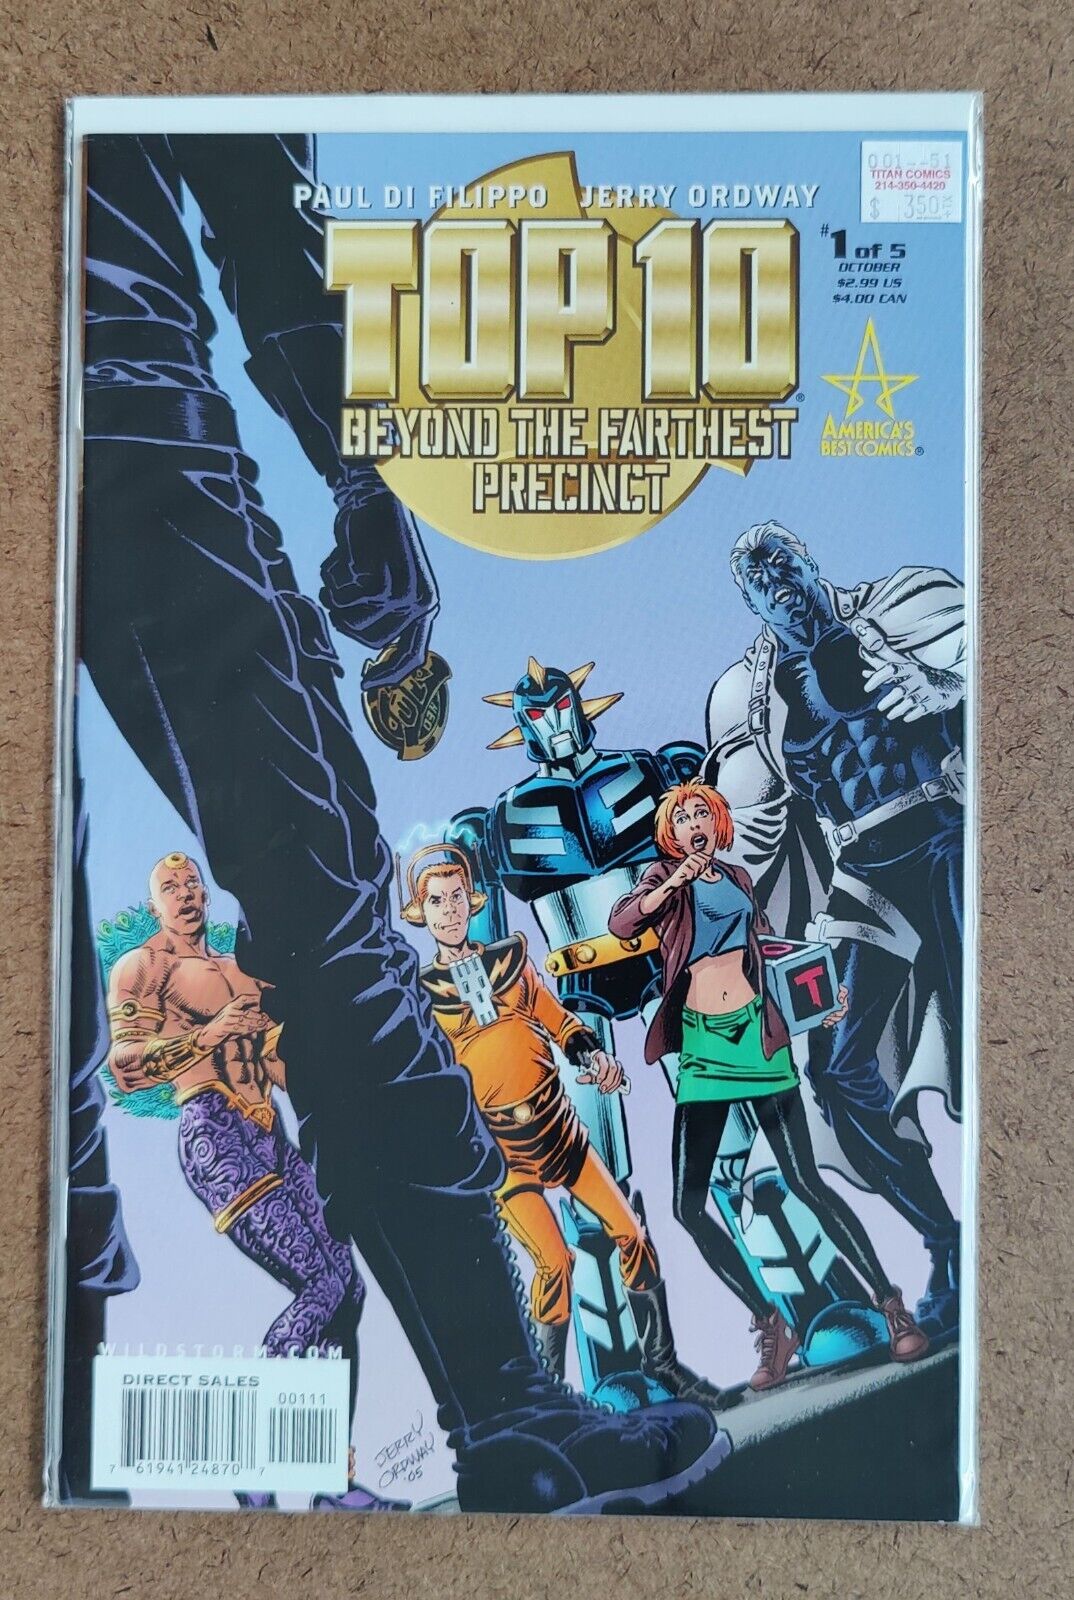 Top 10: Beyond the Farthest Precinct #1 DC Wildstorm America\'s Best Comics 2005